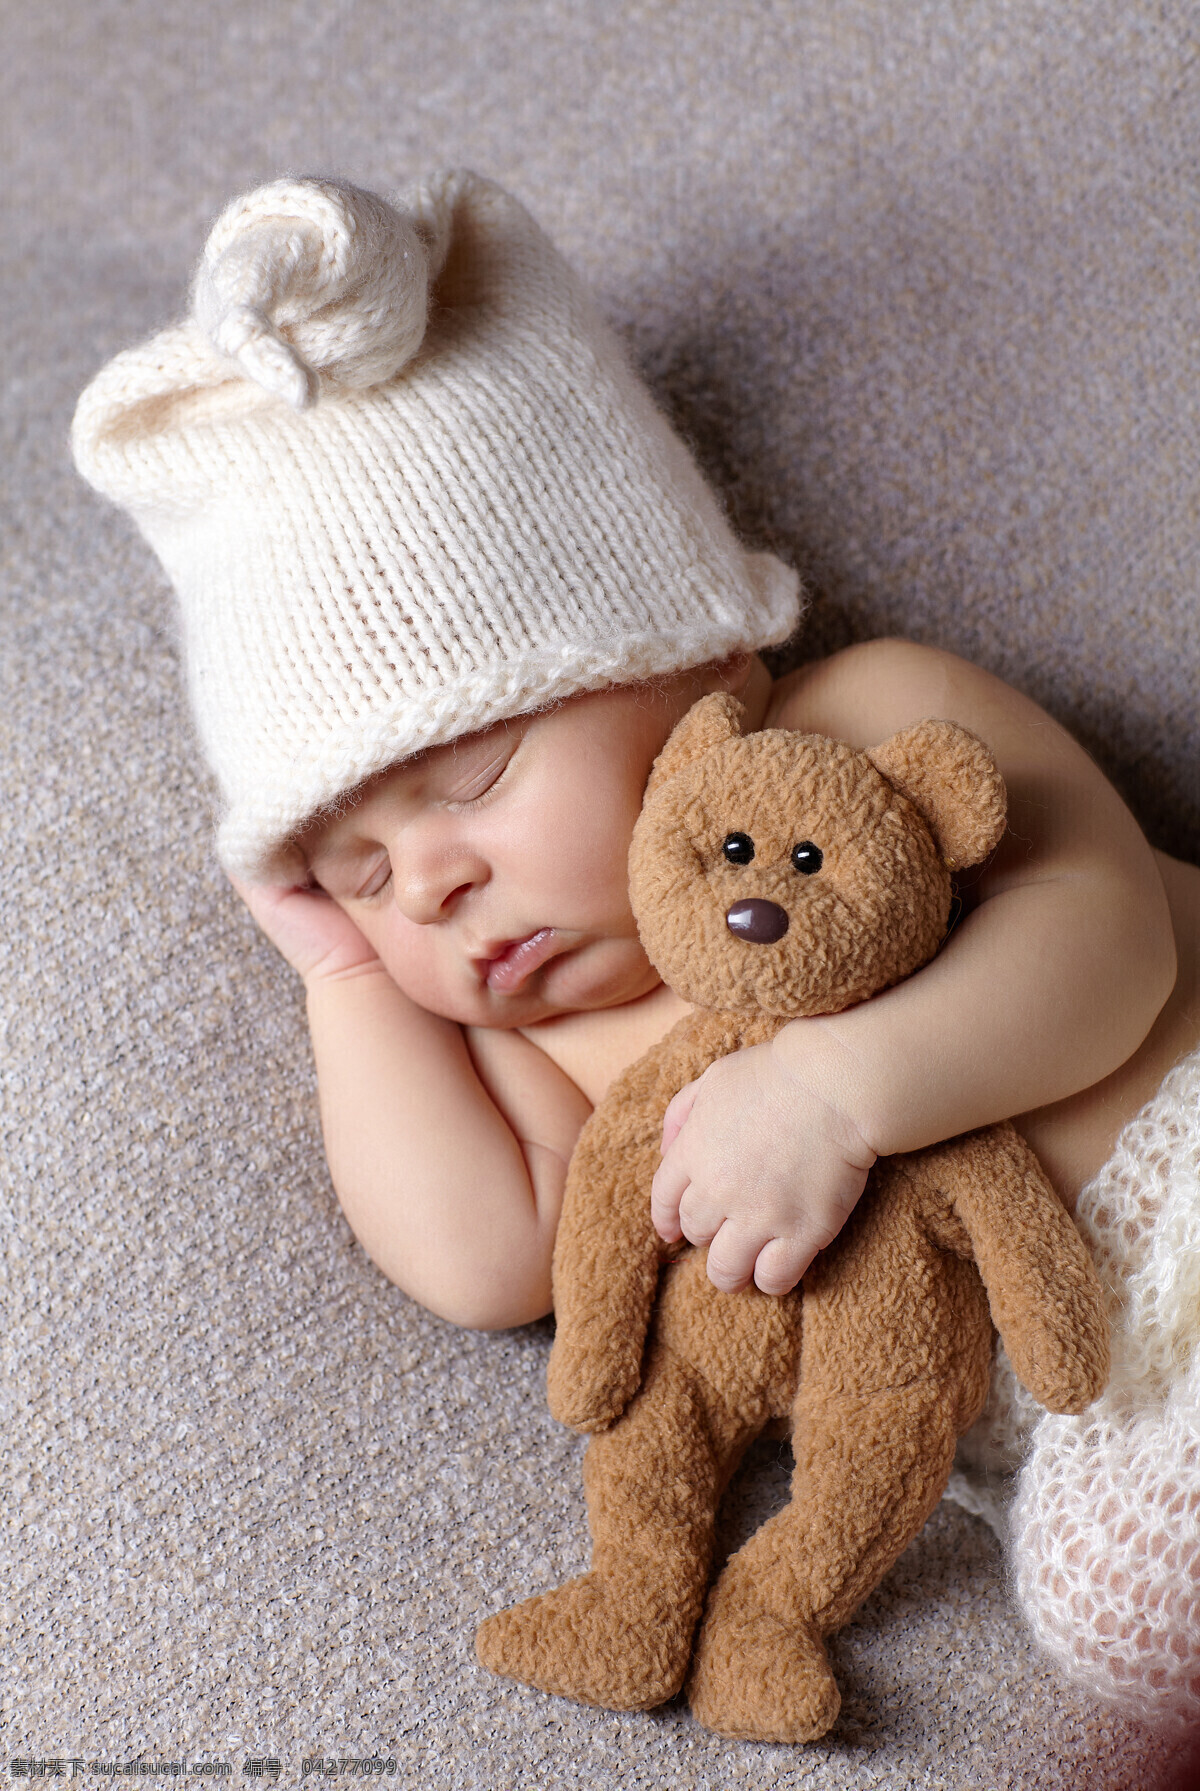 抱 小 熊 睡着 新生 婴儿 宝宝 新生婴儿 宝贝 baby 儿童图片 人物图片